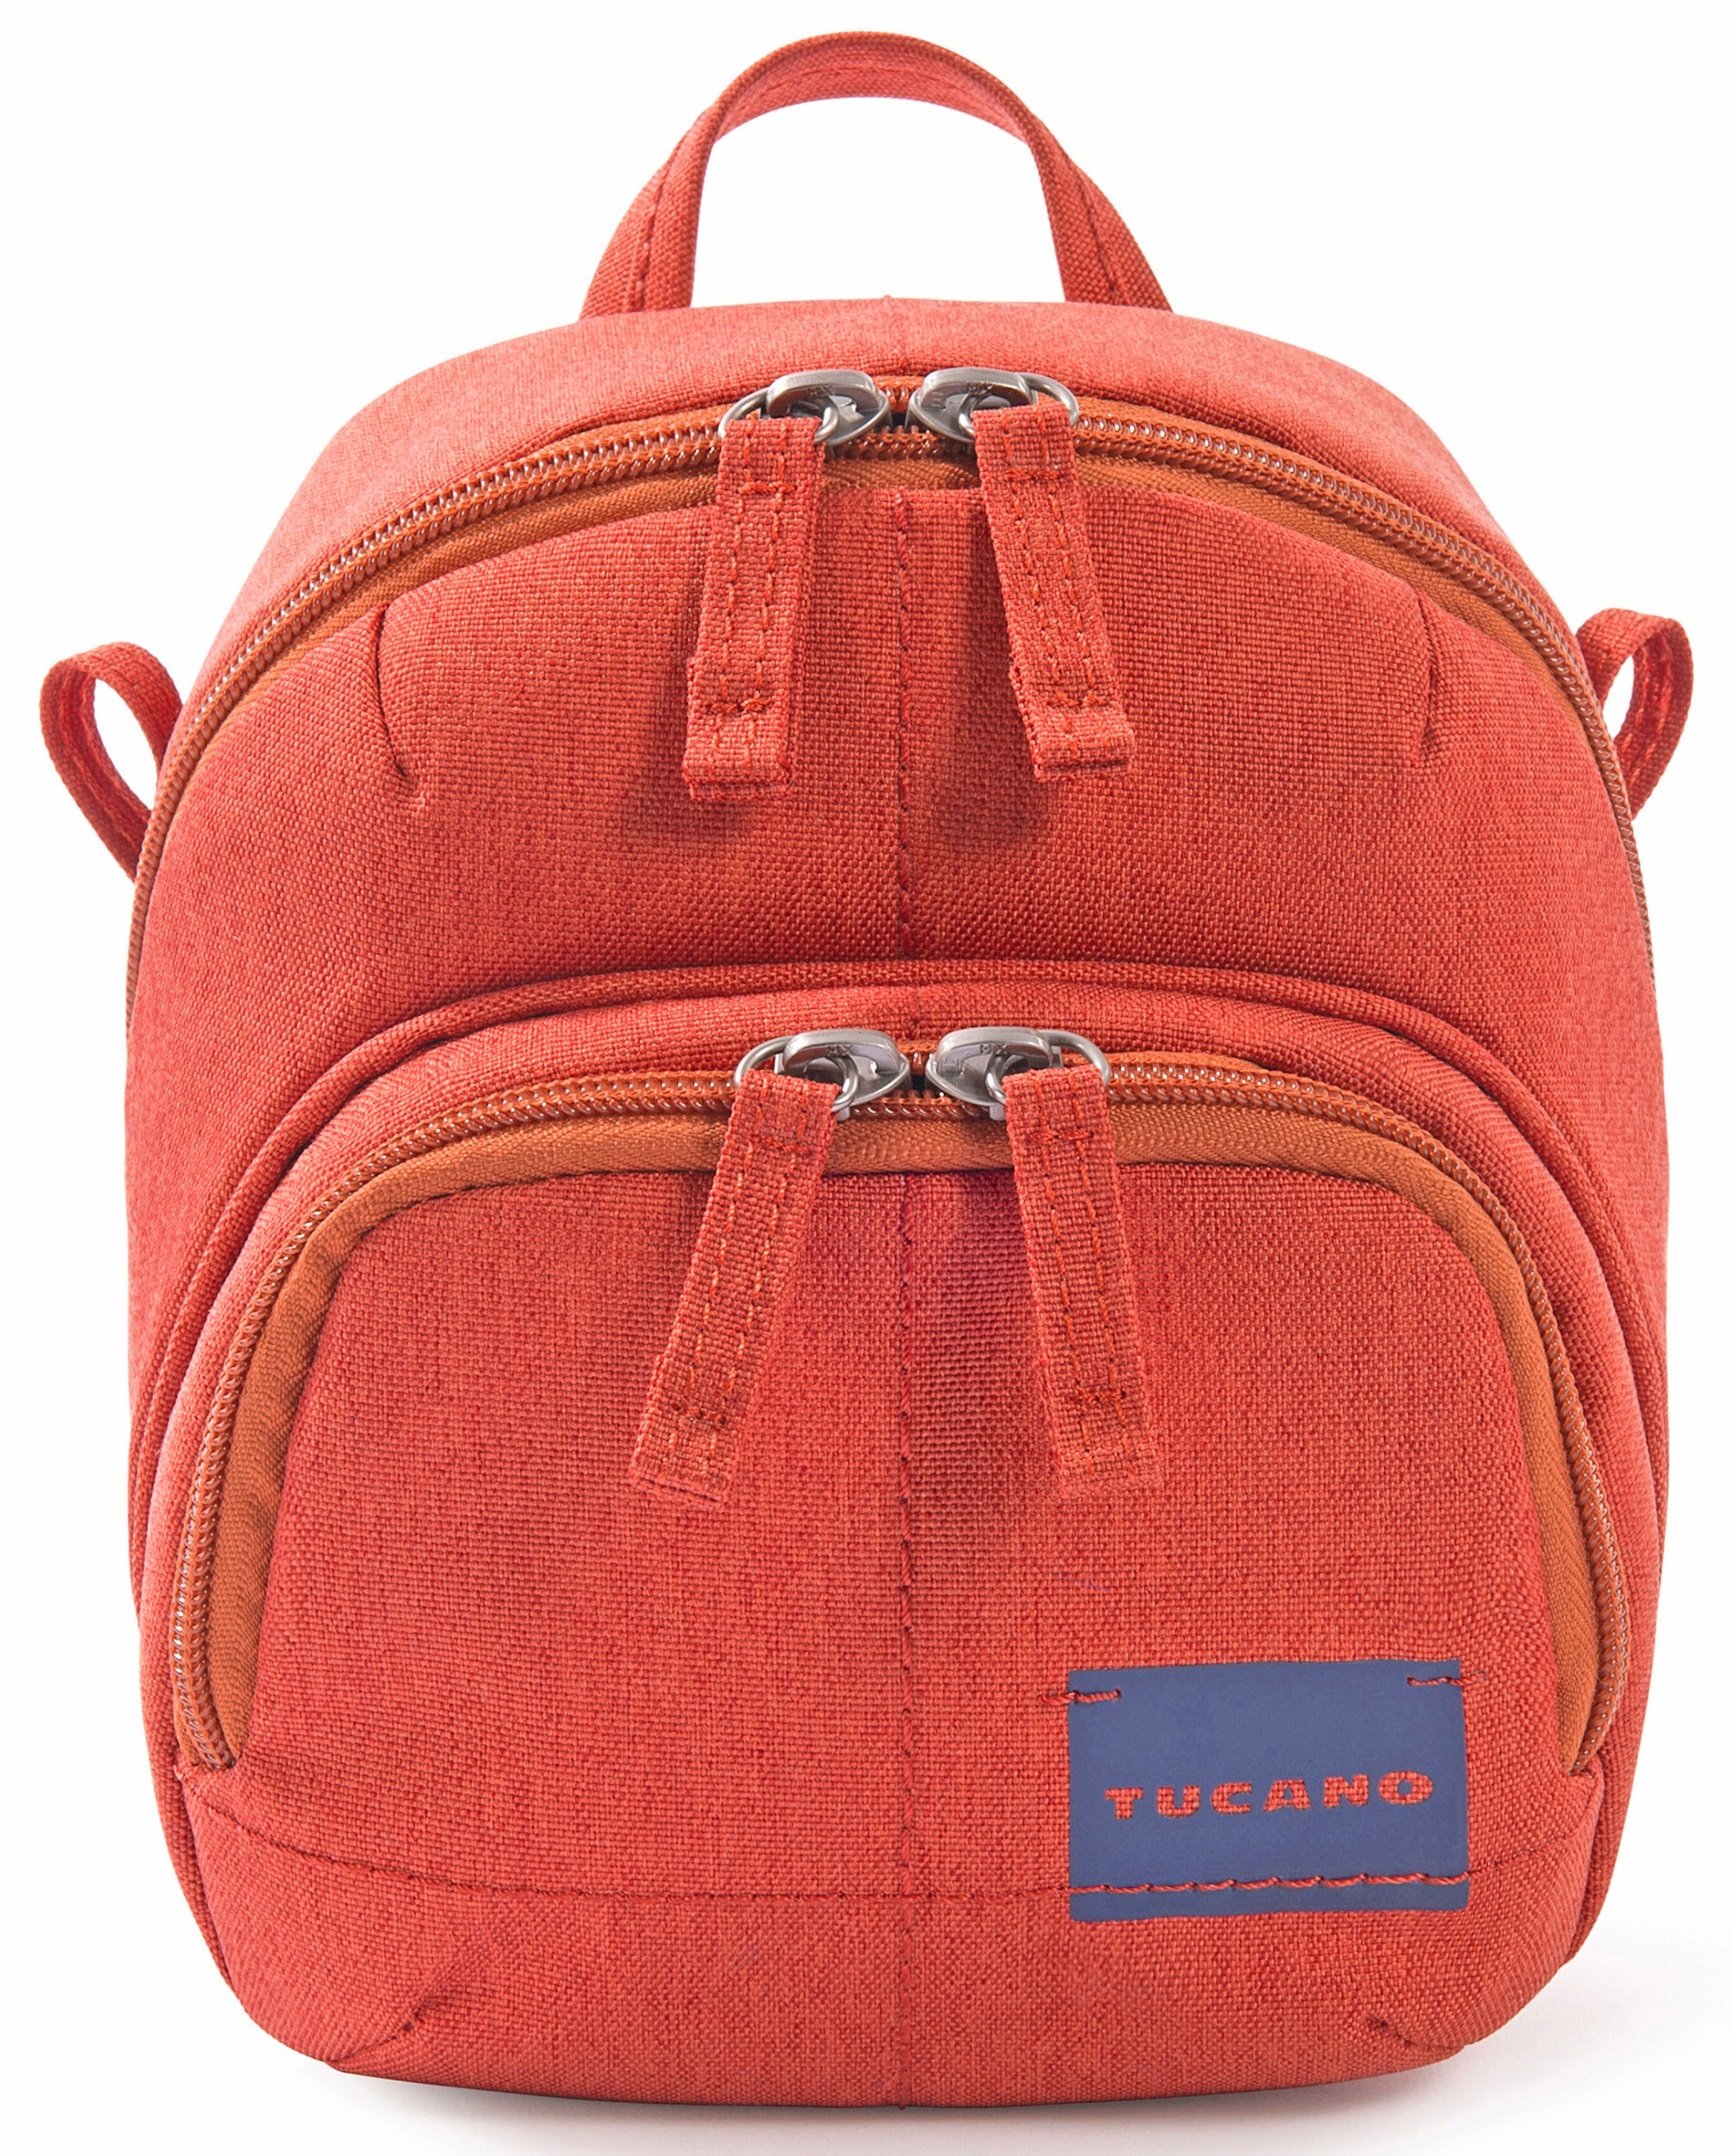 Сумка для фото-видео камеры Tucano Contatto Digital Bag (красная) фото 1